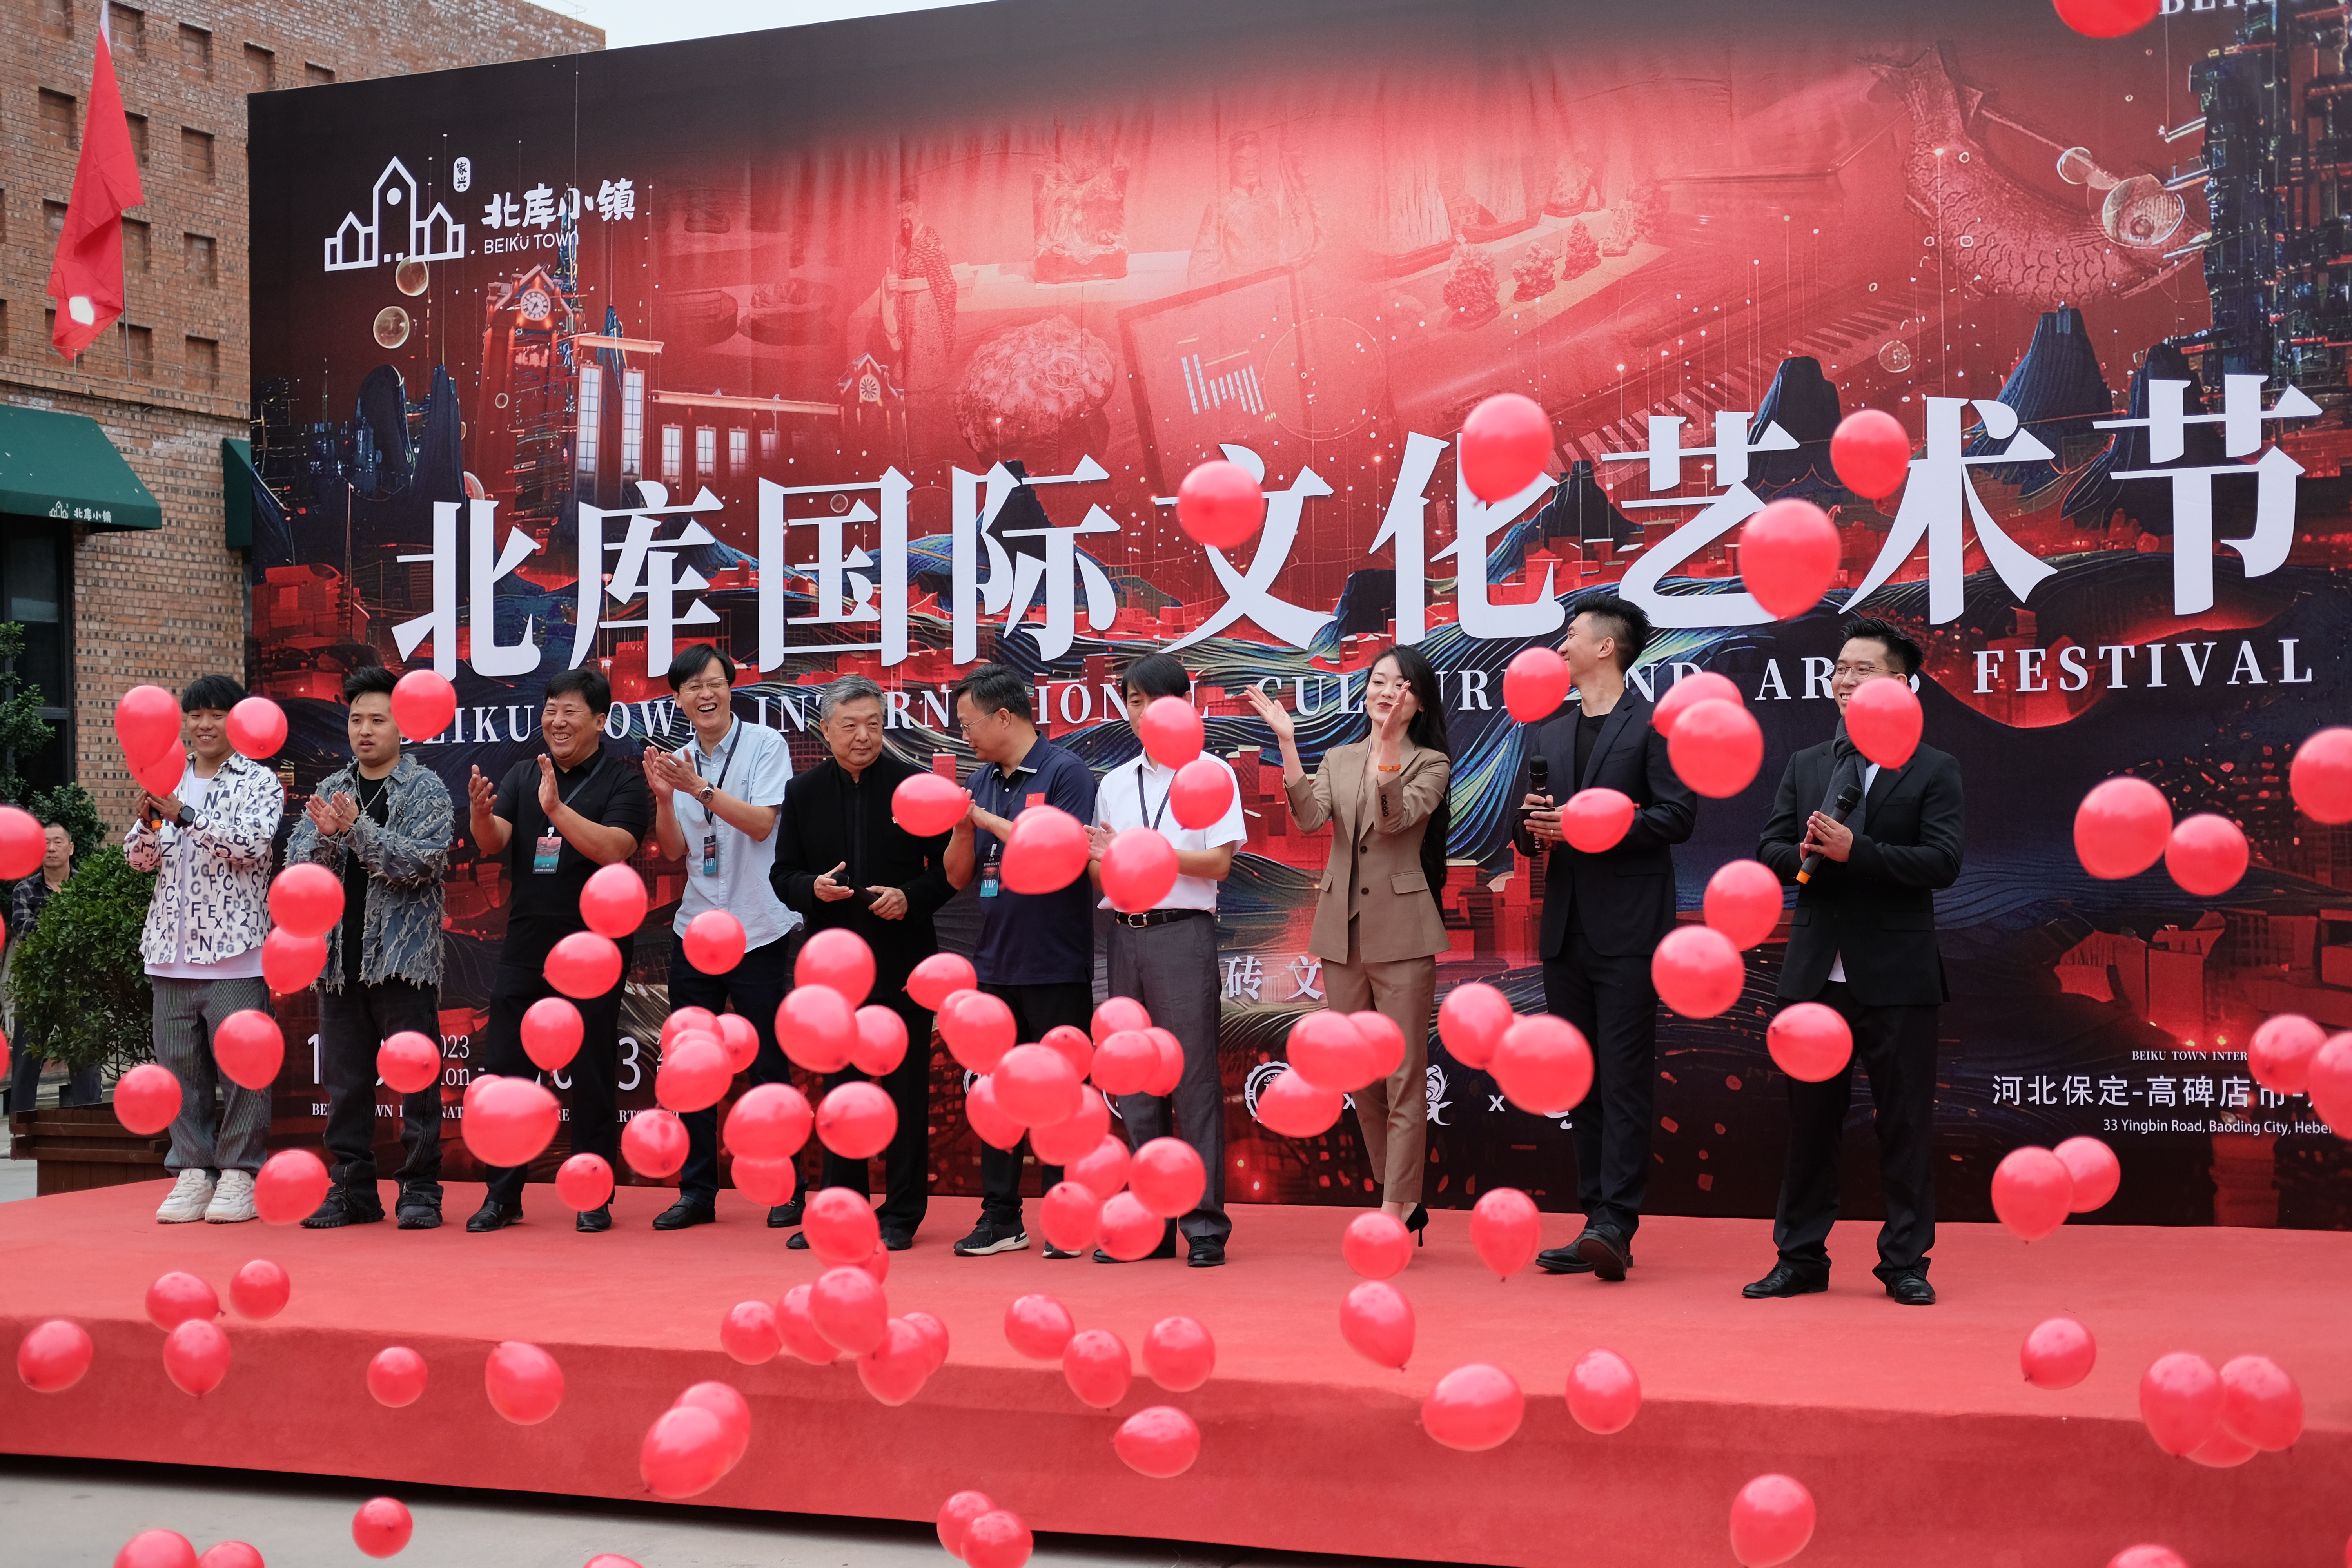 北库国际文化艺术节在一片气球升腾下正式开幕